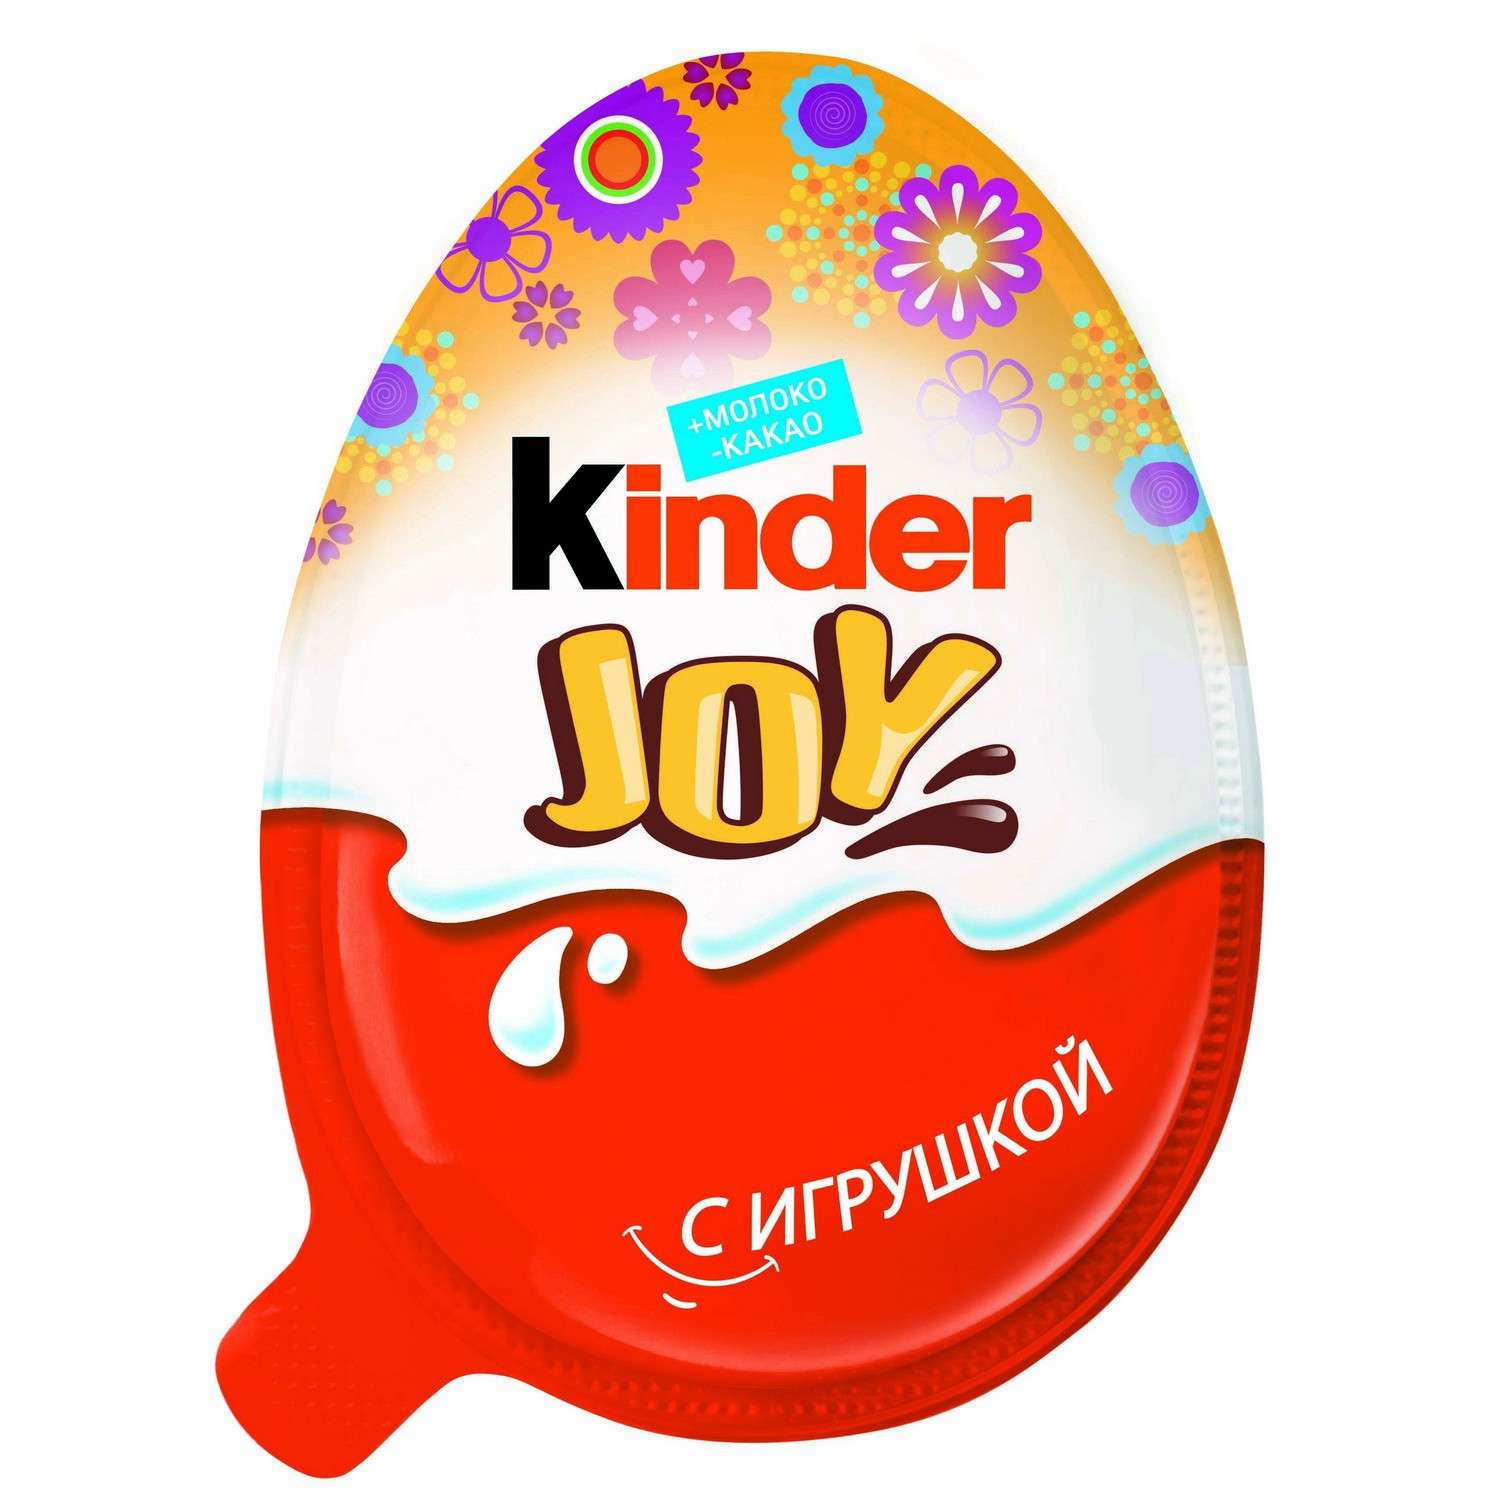 Шоколадное яйцо Kinder Kinder Joy Весна 21г в ассортименте - фото 2